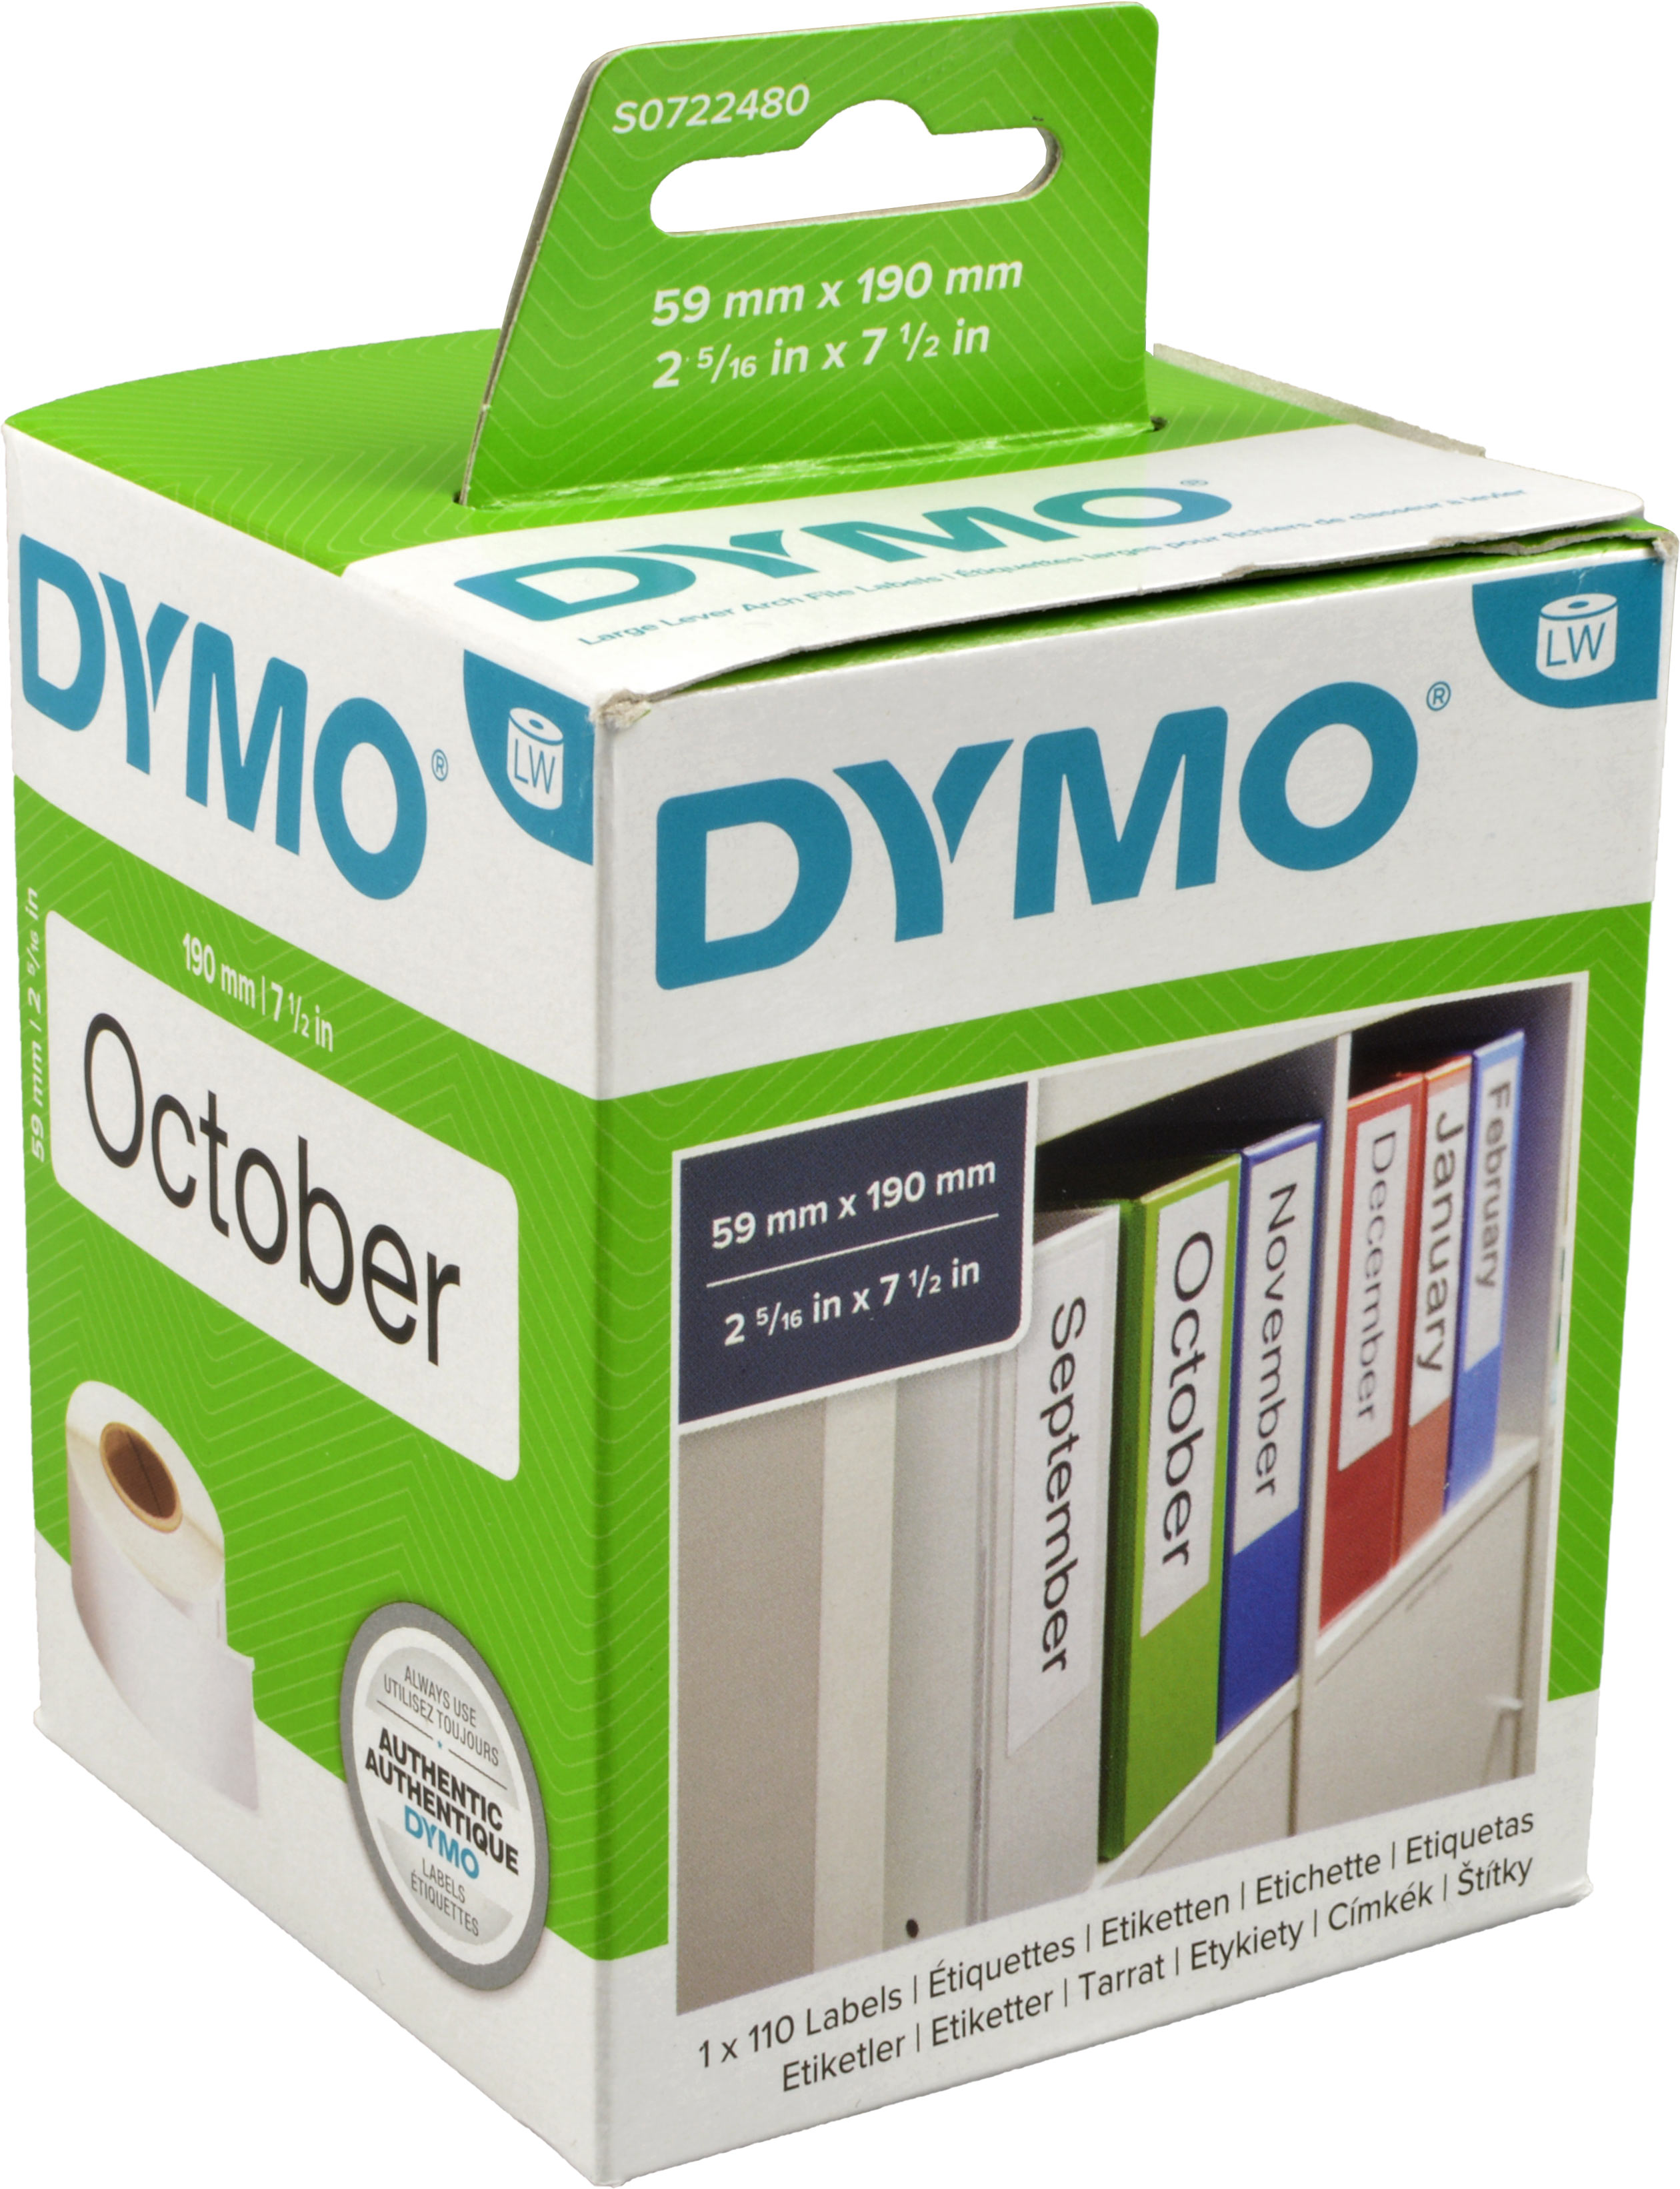 Dymo Etiketten 99019  weiß  59 x 190mm  1 x 110 St.